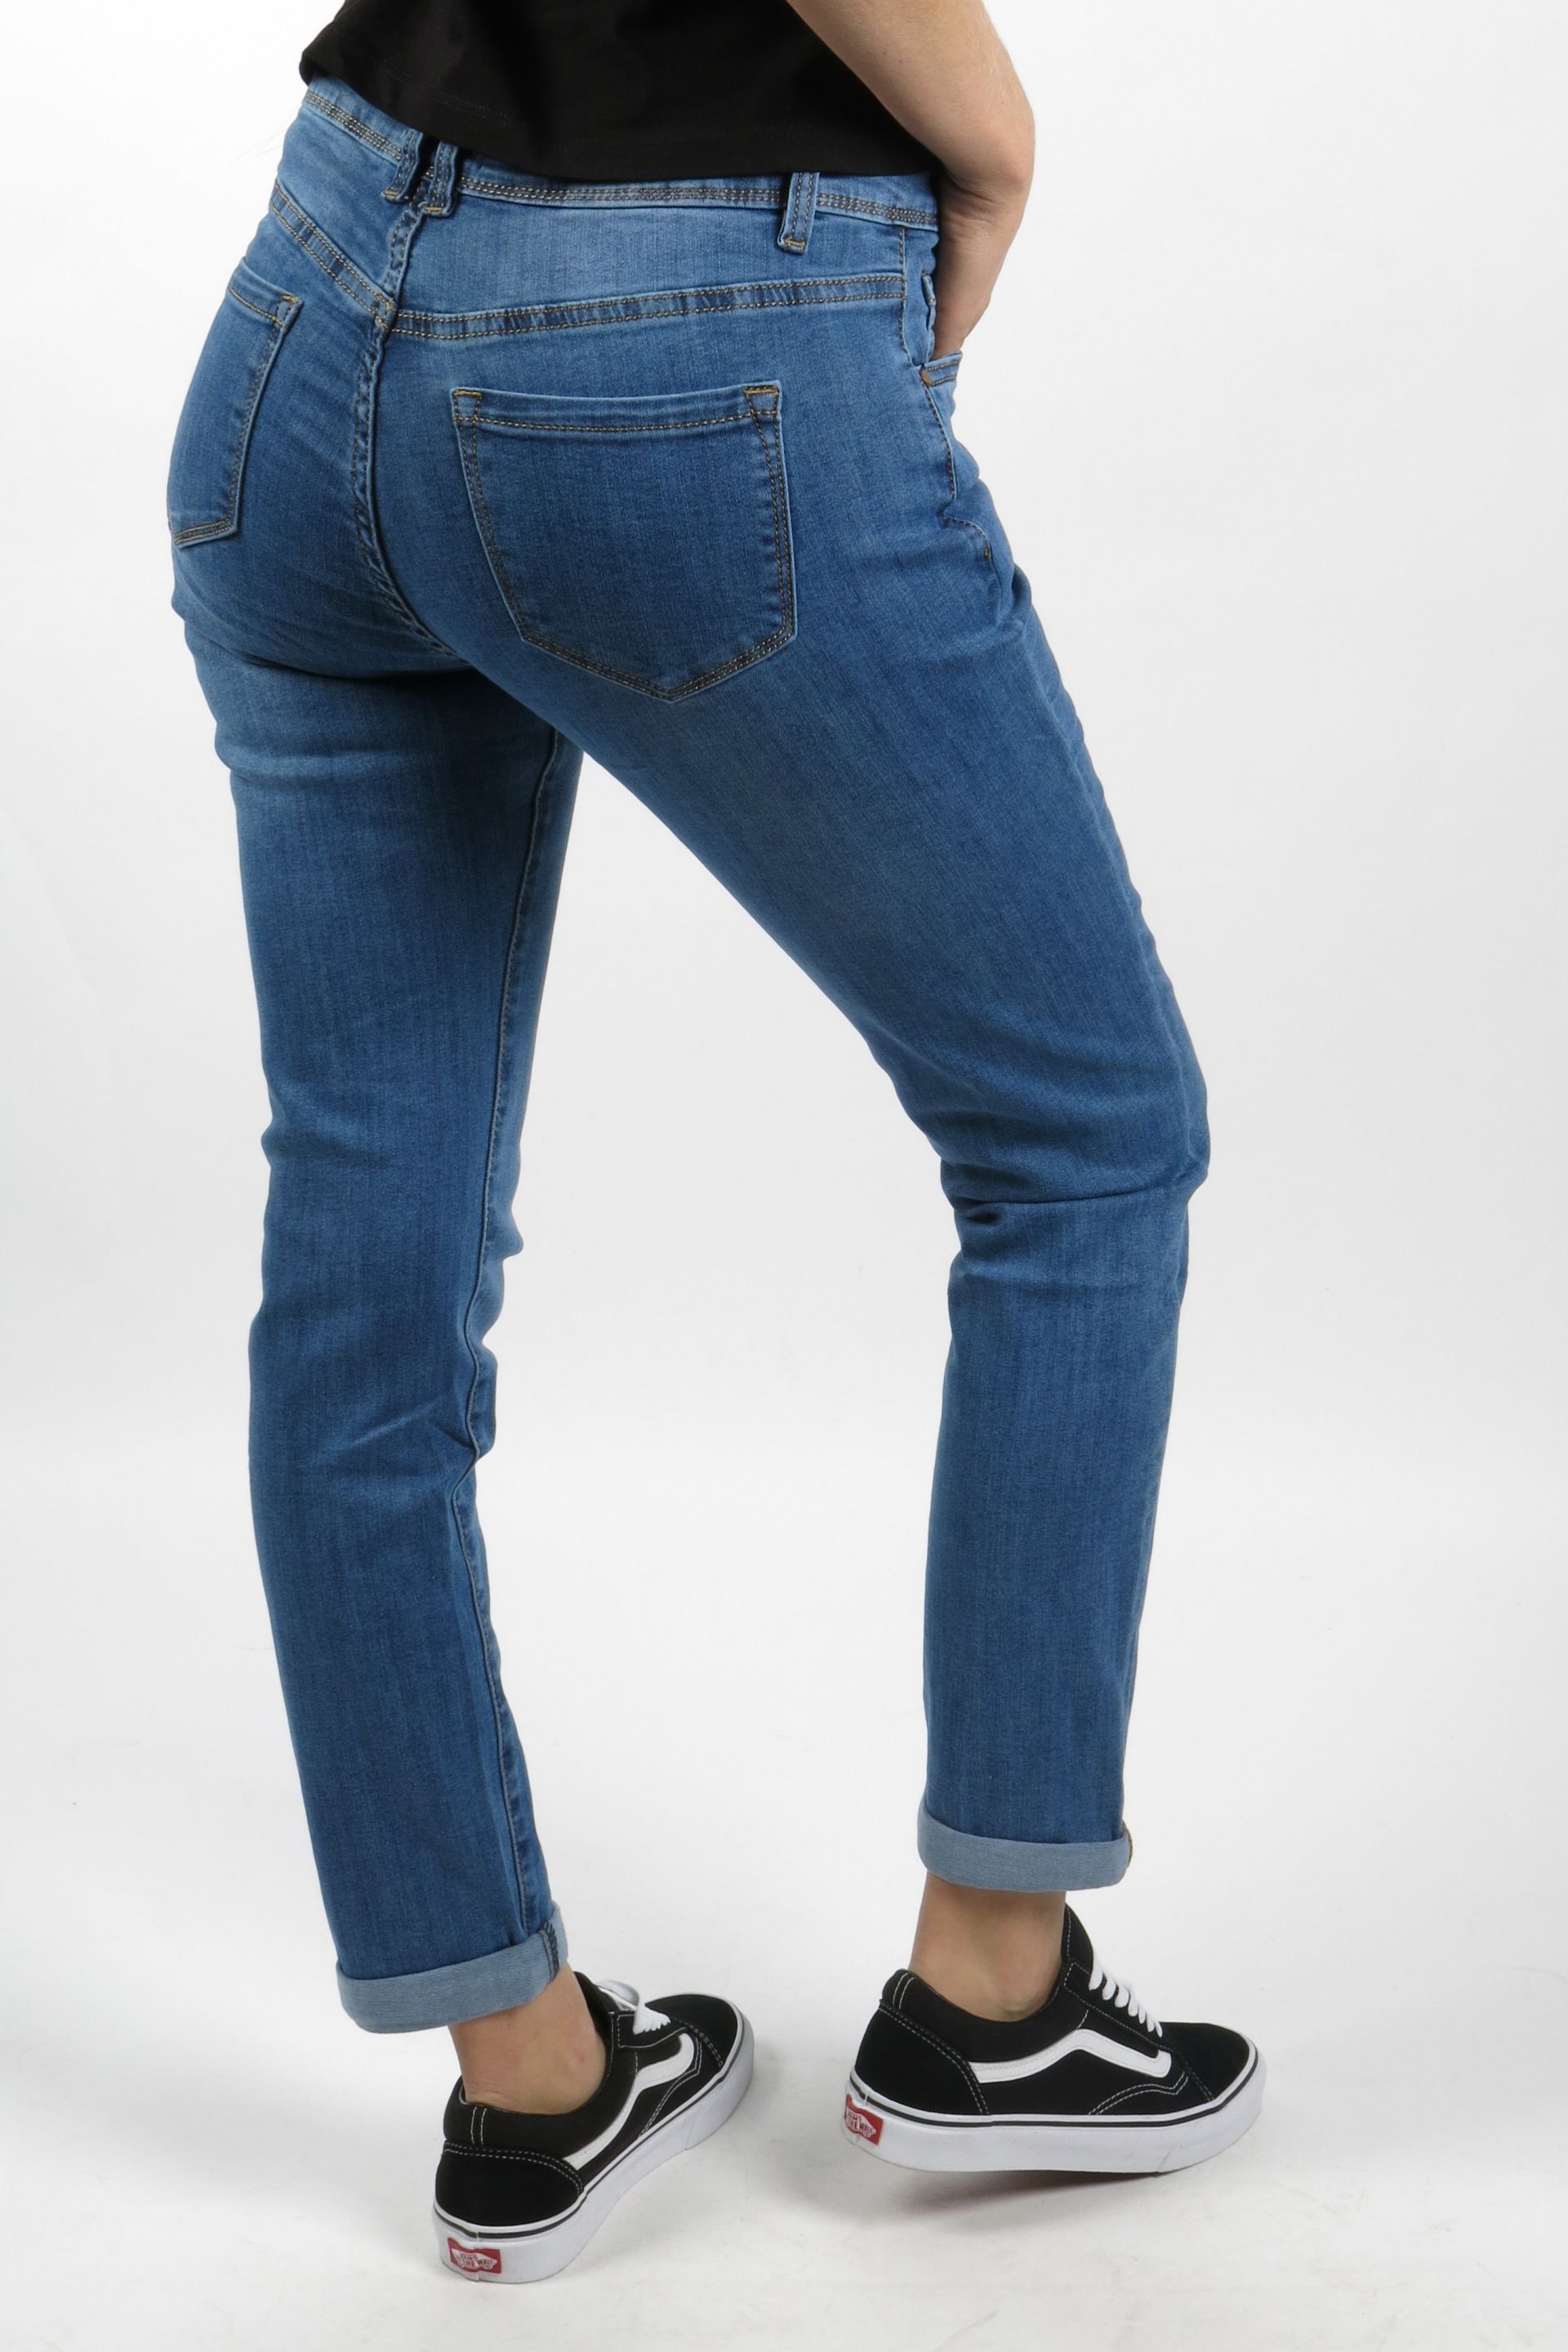 ganske enkelt nuttet smuk Jeans NORFY